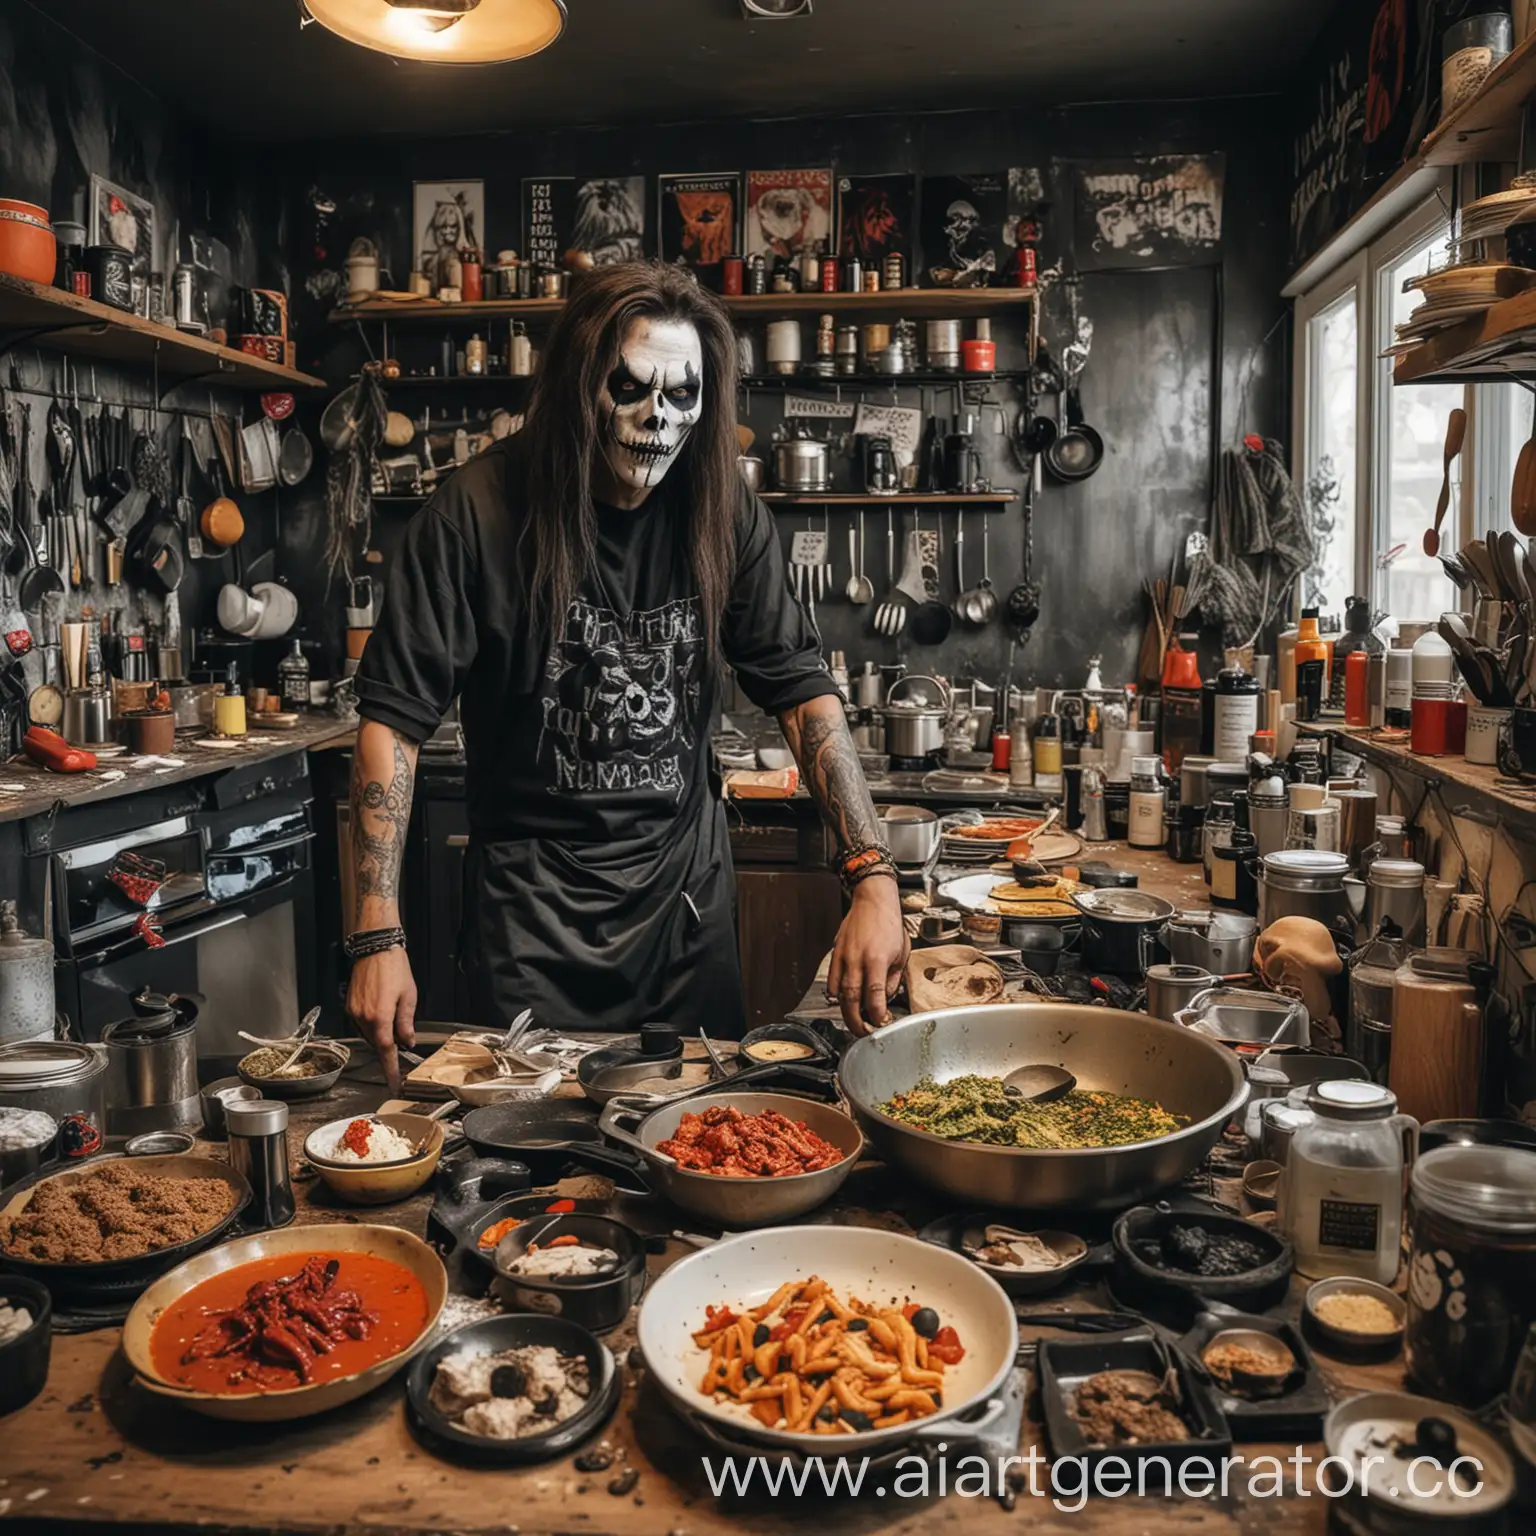 Кухня с разбросанными на столе продуктами и мужчина который готовит на этой кухне различные блюда одетый в одежду и грим death metal